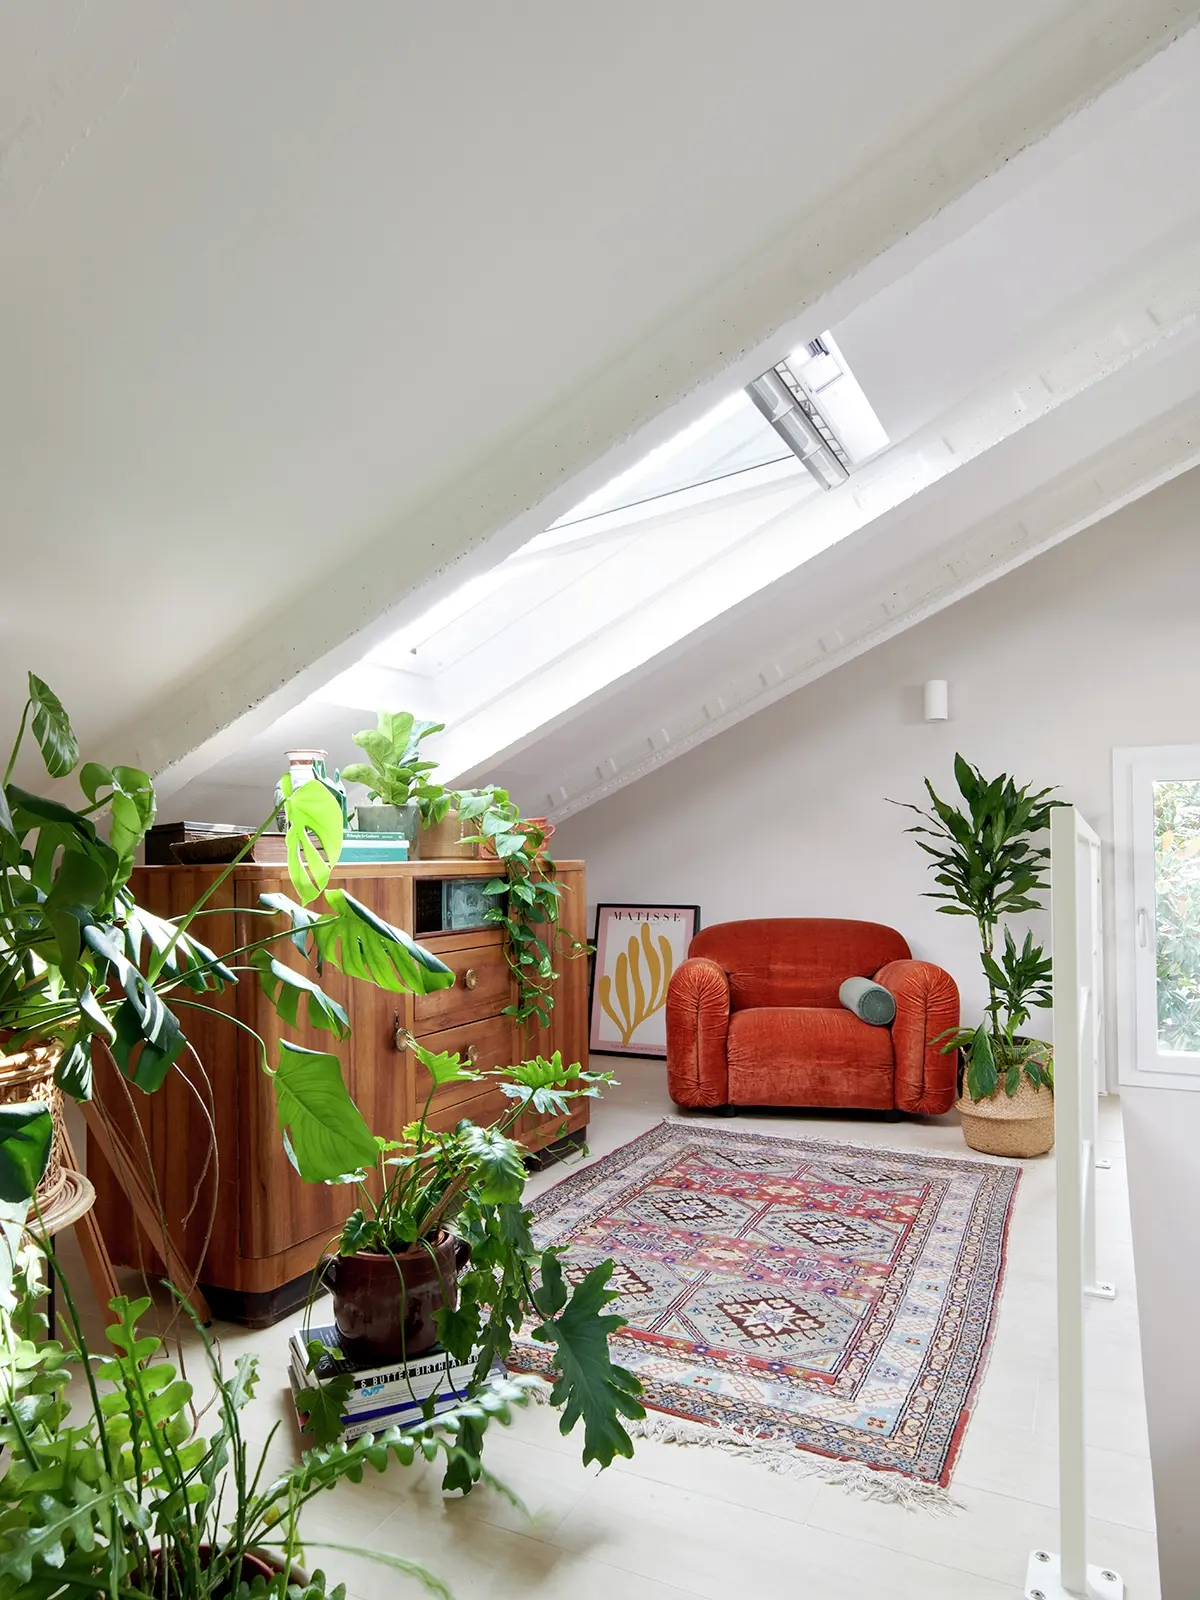 Chambre de comble lumineuse avec fenêtre VELUX, plantes, meubles vintage et canapé orange.